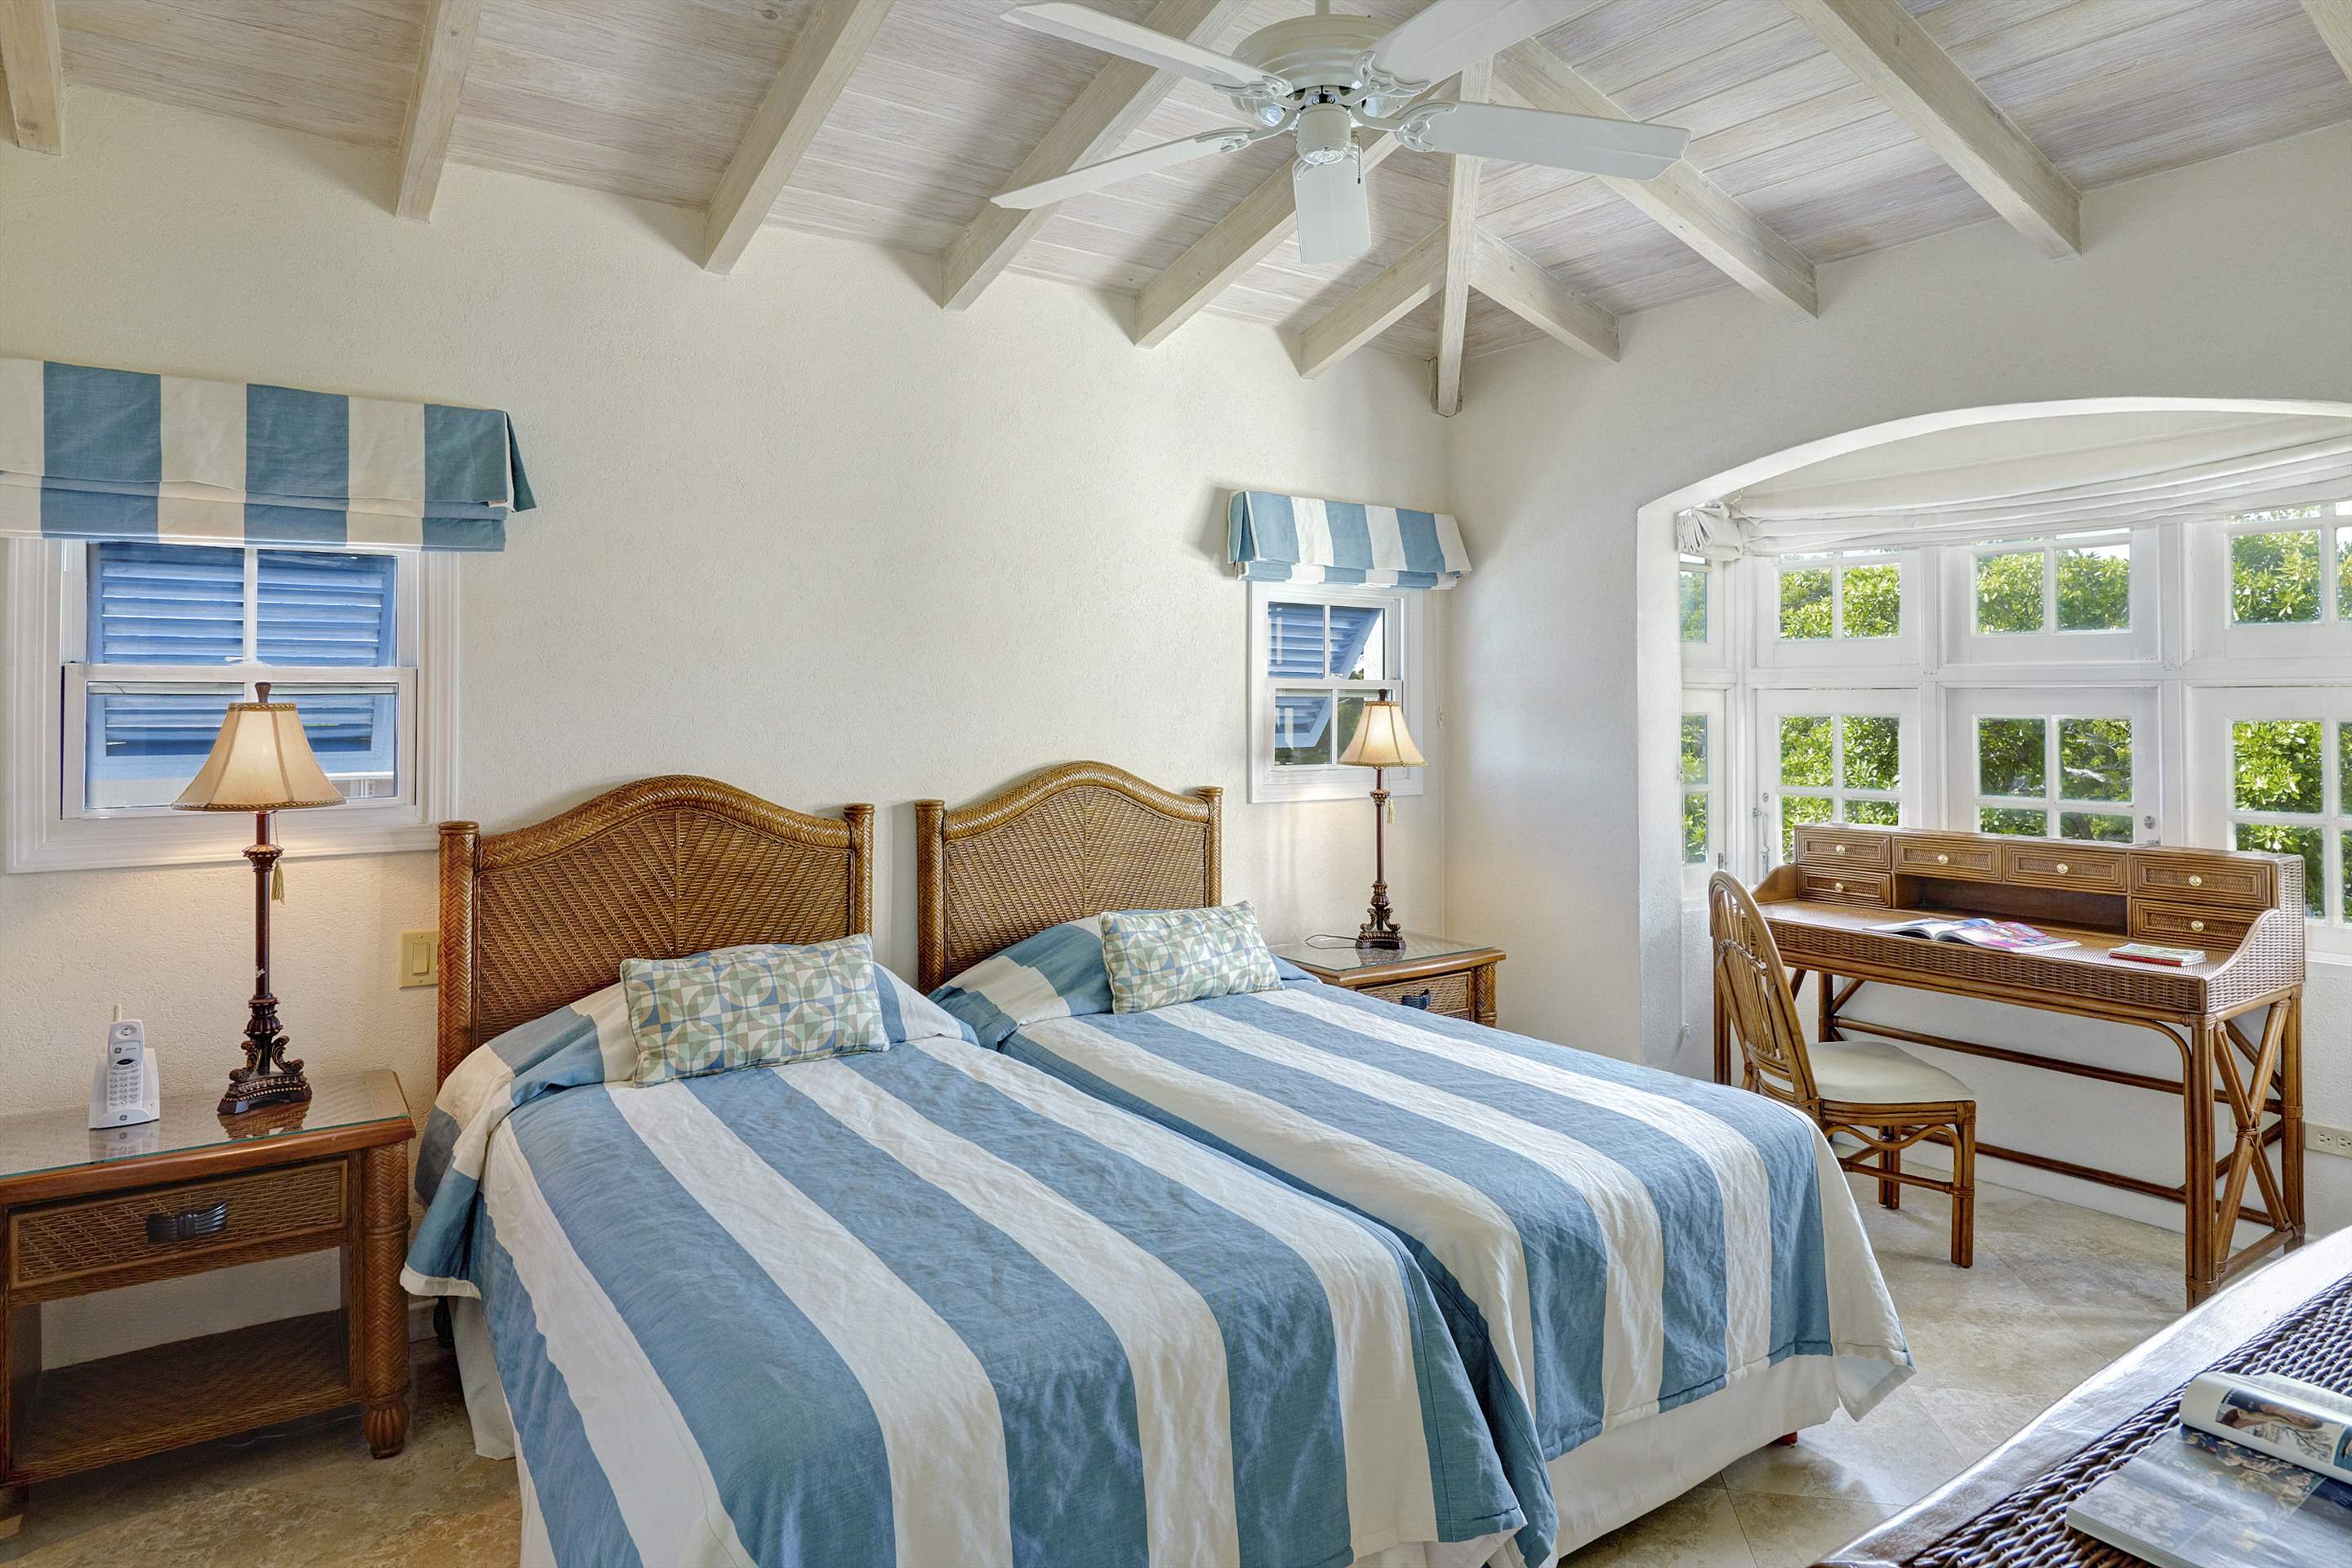 Maxwell Beach Villas 501, 2 bedroom, 2 bedroom villa in St. Lawrence Gap & South Coast, Barbados Photo #15